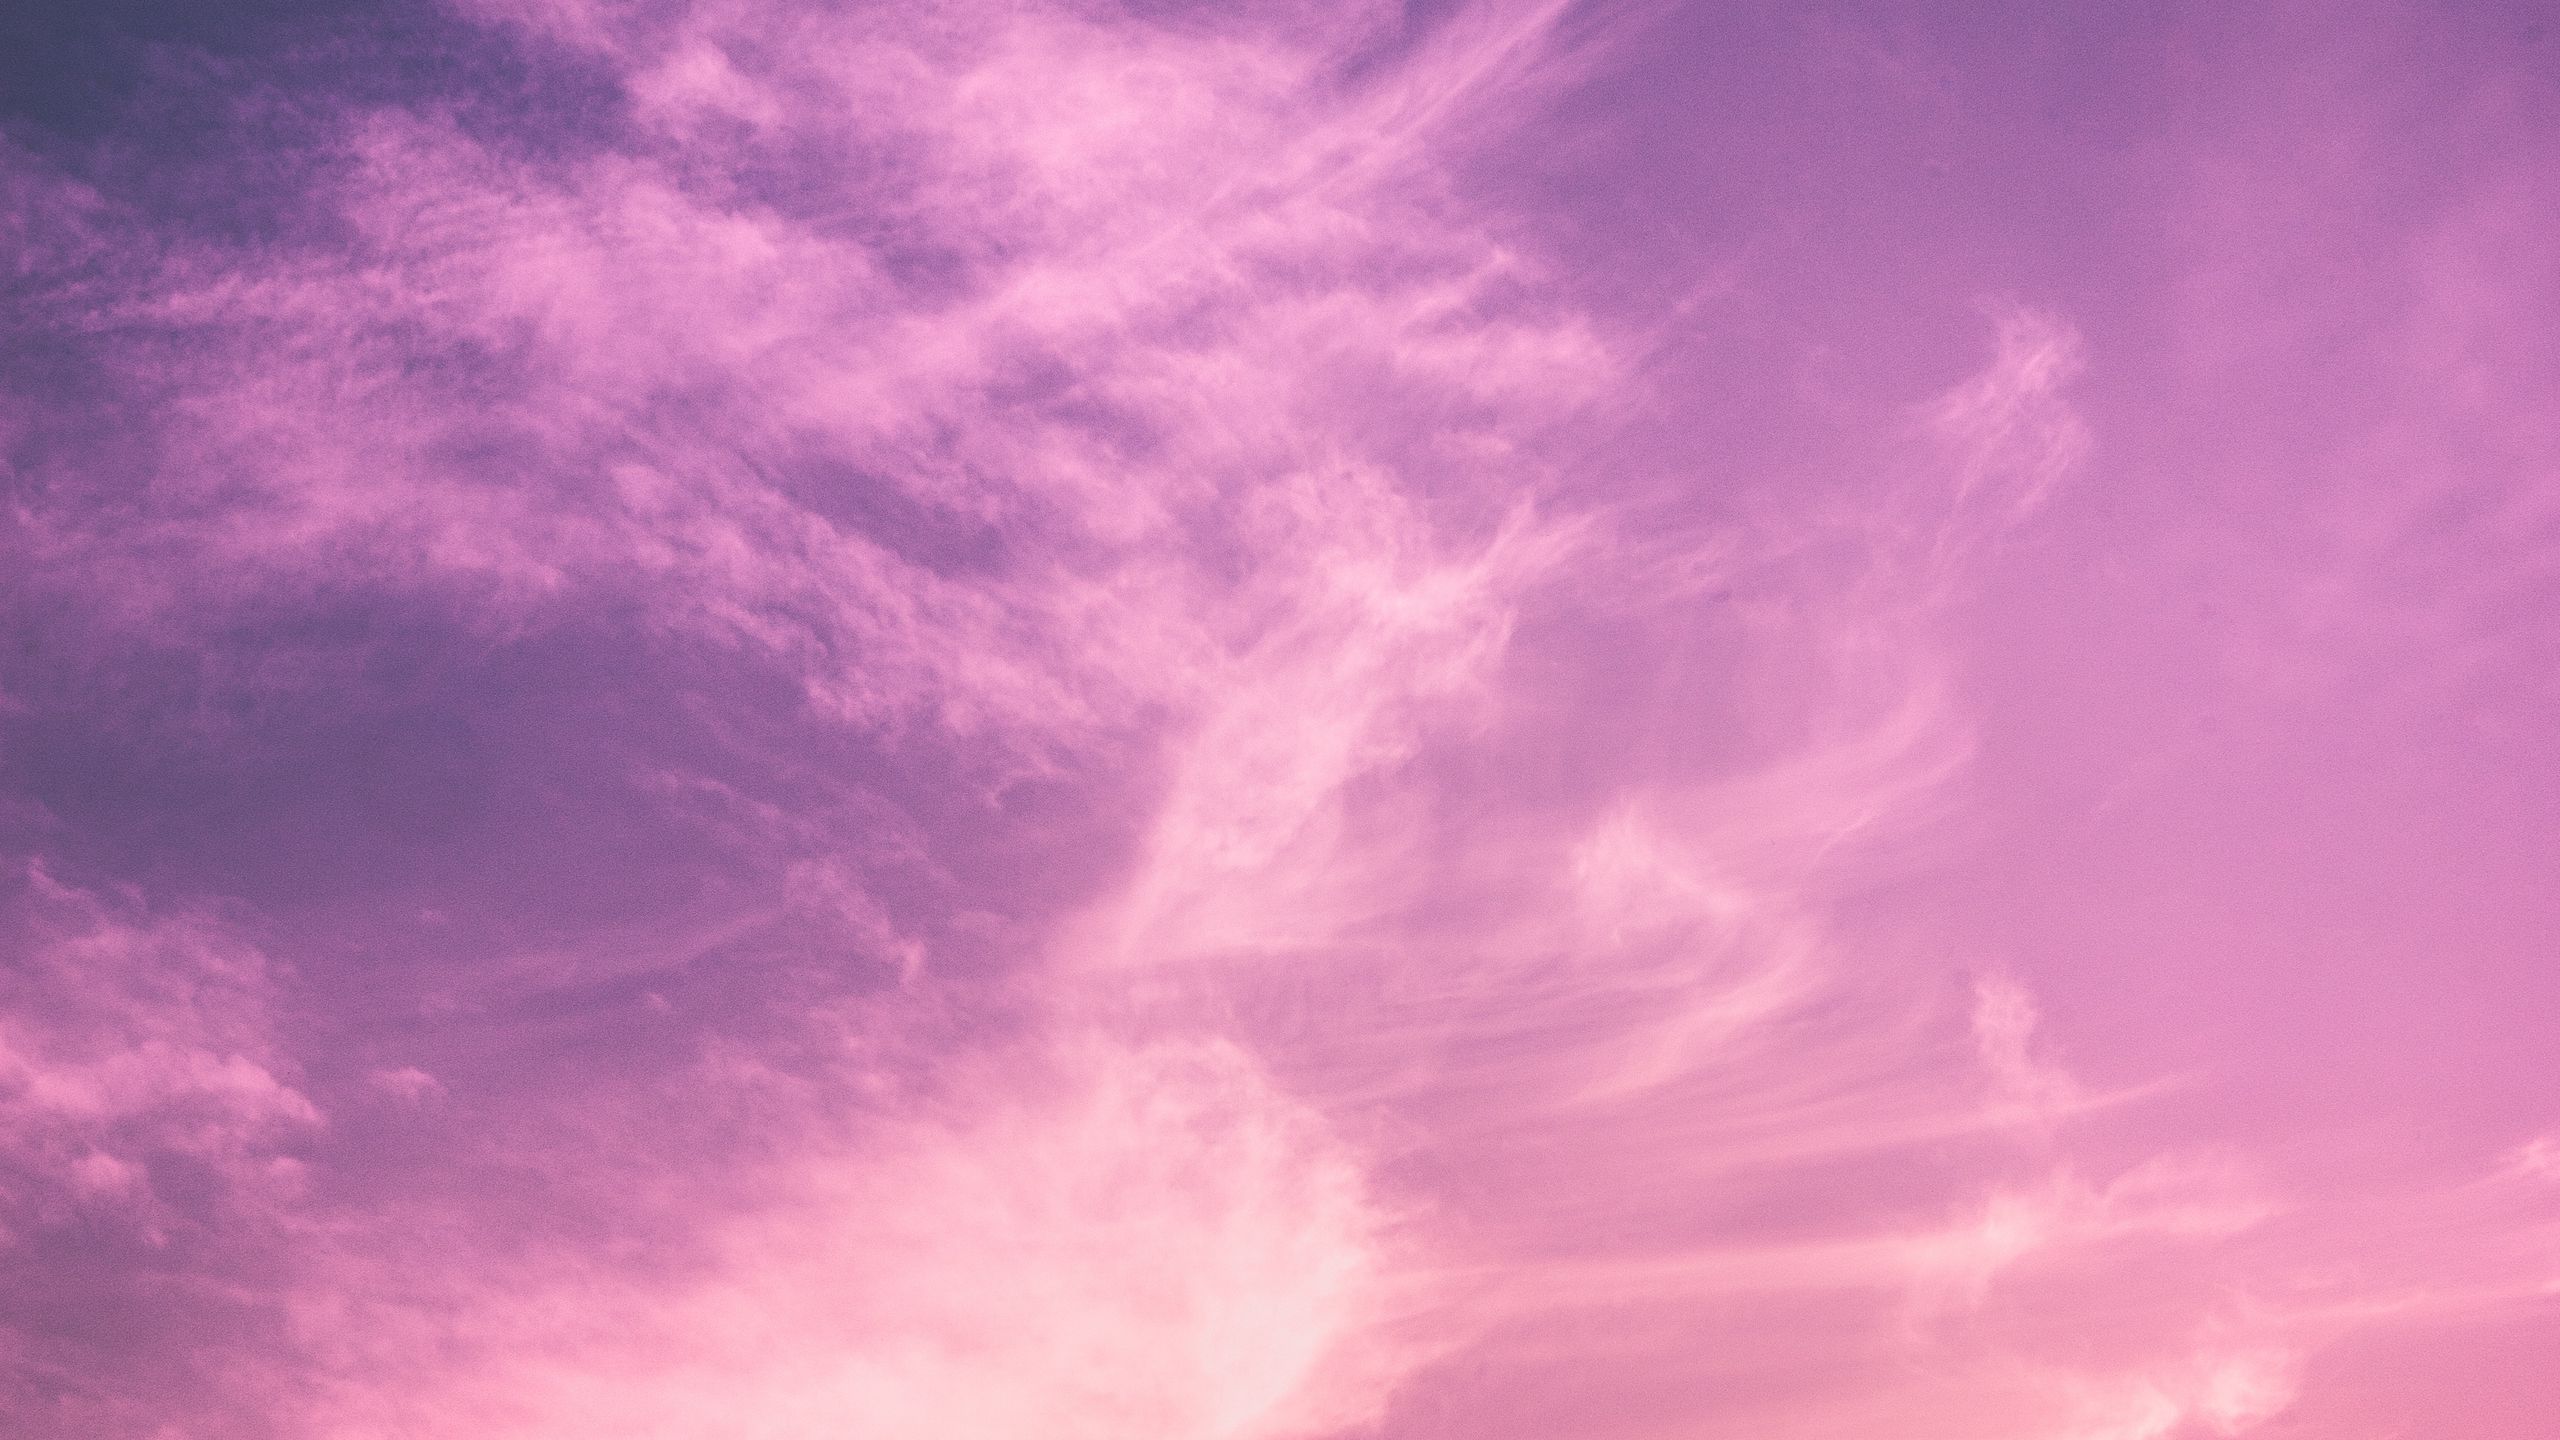  2560x1440 Hintergrundbild 2560x1440. Download wallpaper 2560x1440 clouds, sky, sunset, porous, light widescreen 16:9 HD background. Clouds, Sky, Sunset